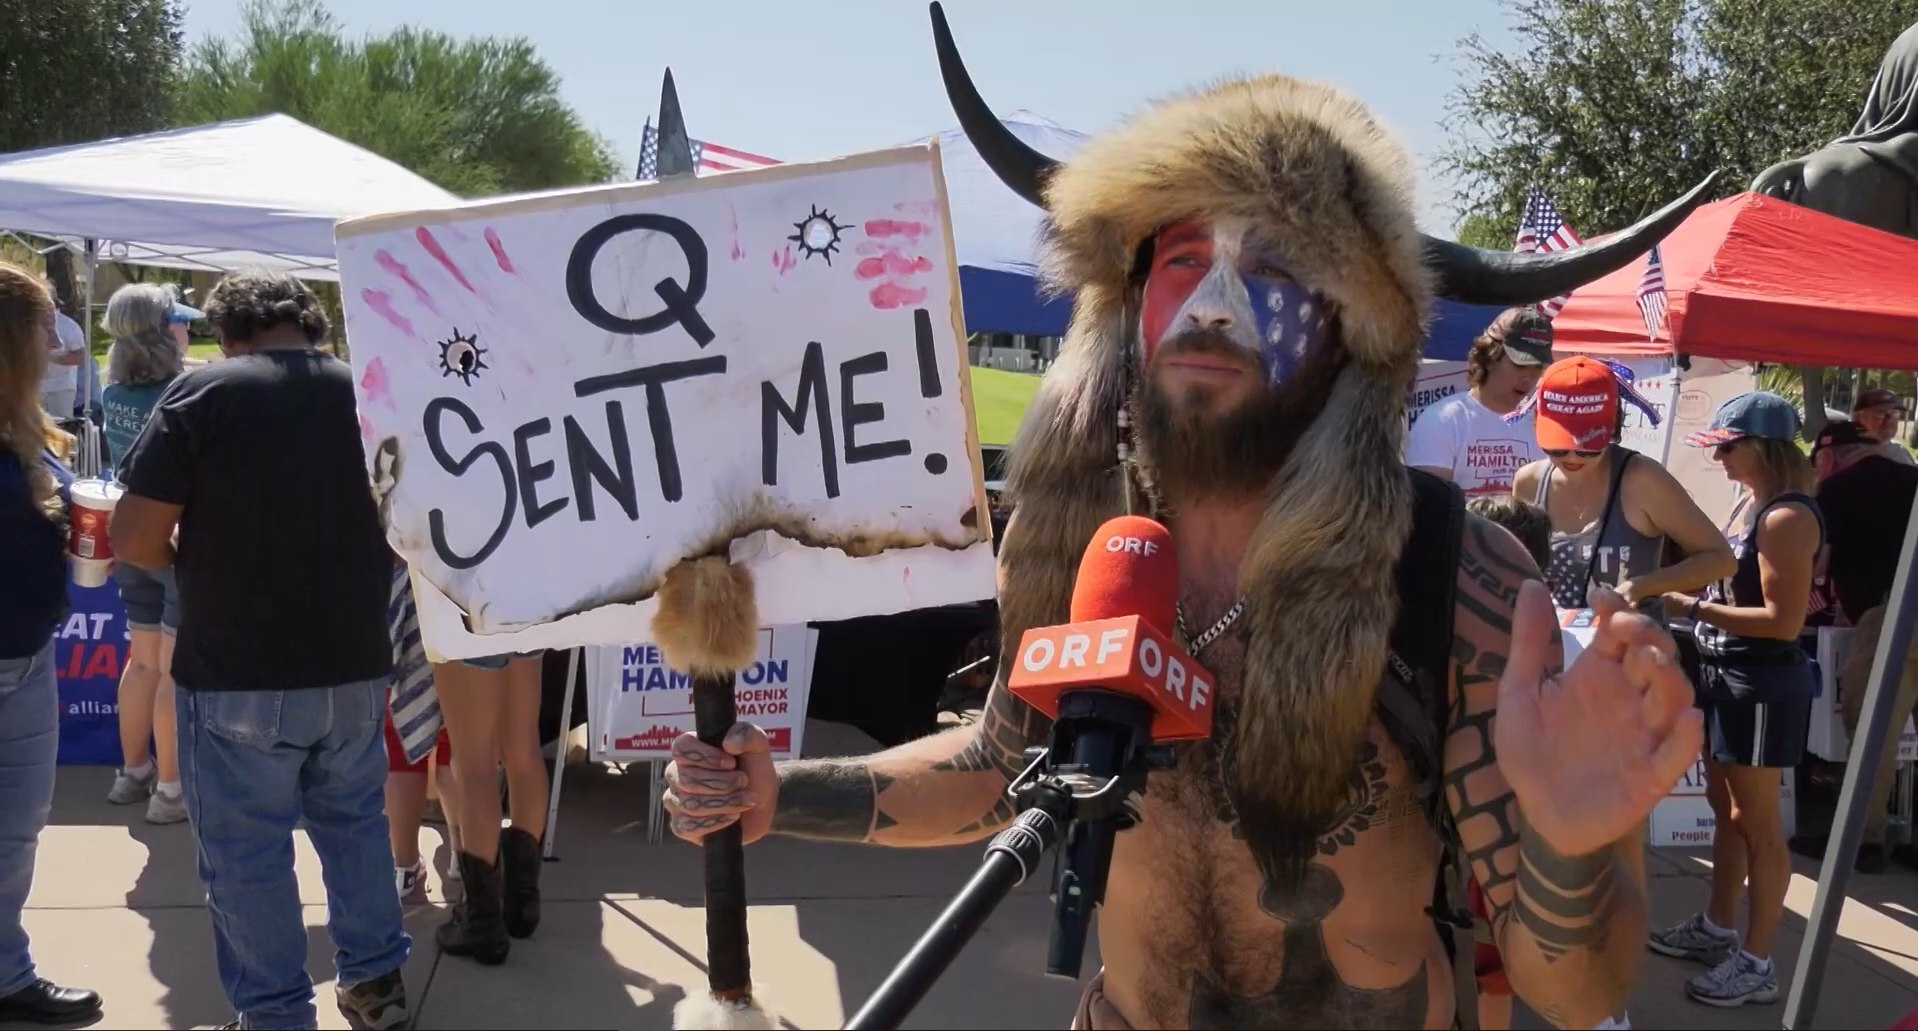 Jake Angeli, uno de los fanáticos de Trump que irrumpió en el capitolio el 6 de enero, participaba activamente de protestas a las que asistía con un cartel con la leyenda “Q me envió” y repetía consignas relacionadas a la conspiración a los asistentes (YouTube).